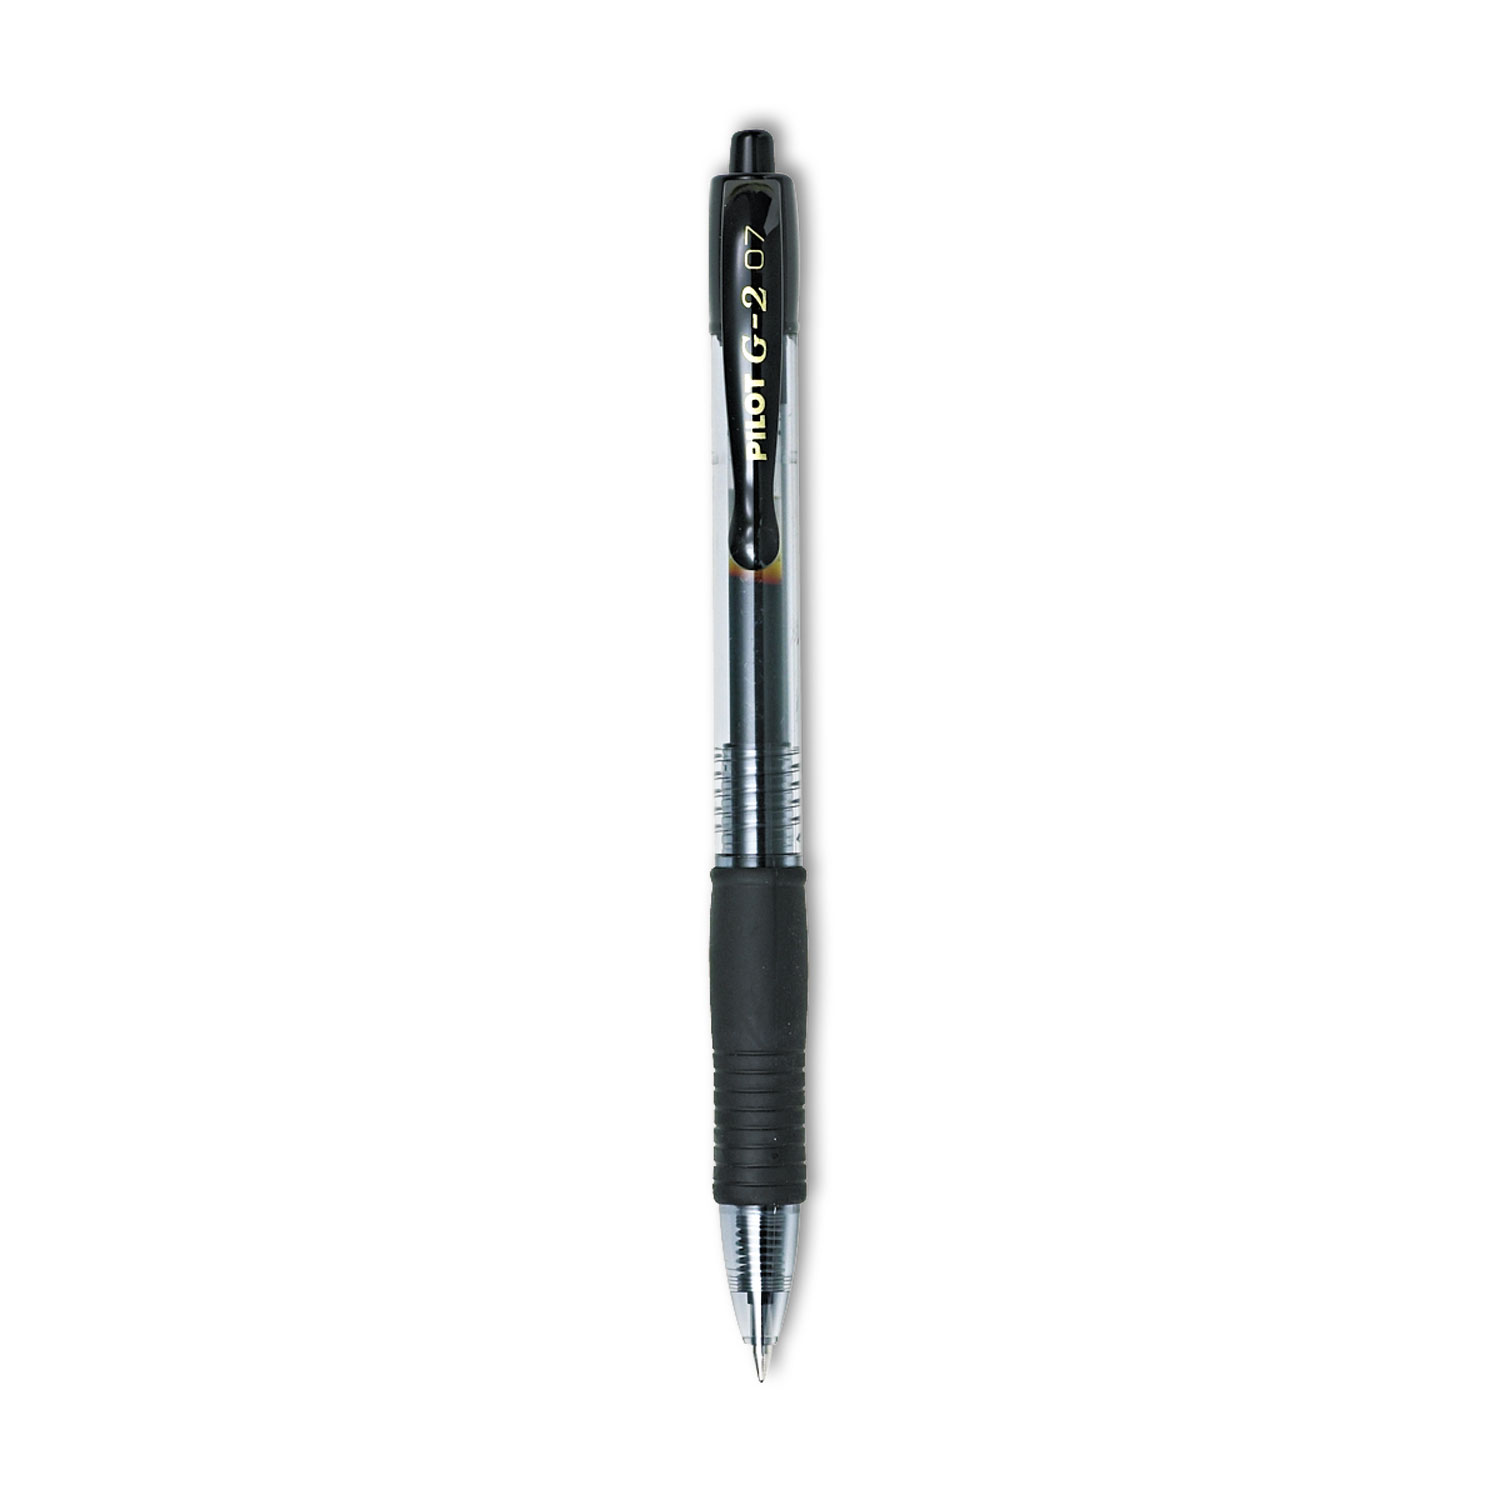 Pilot G2 Pens, Gel Ink, Extra Fine Point, Black Ink - 4 pens